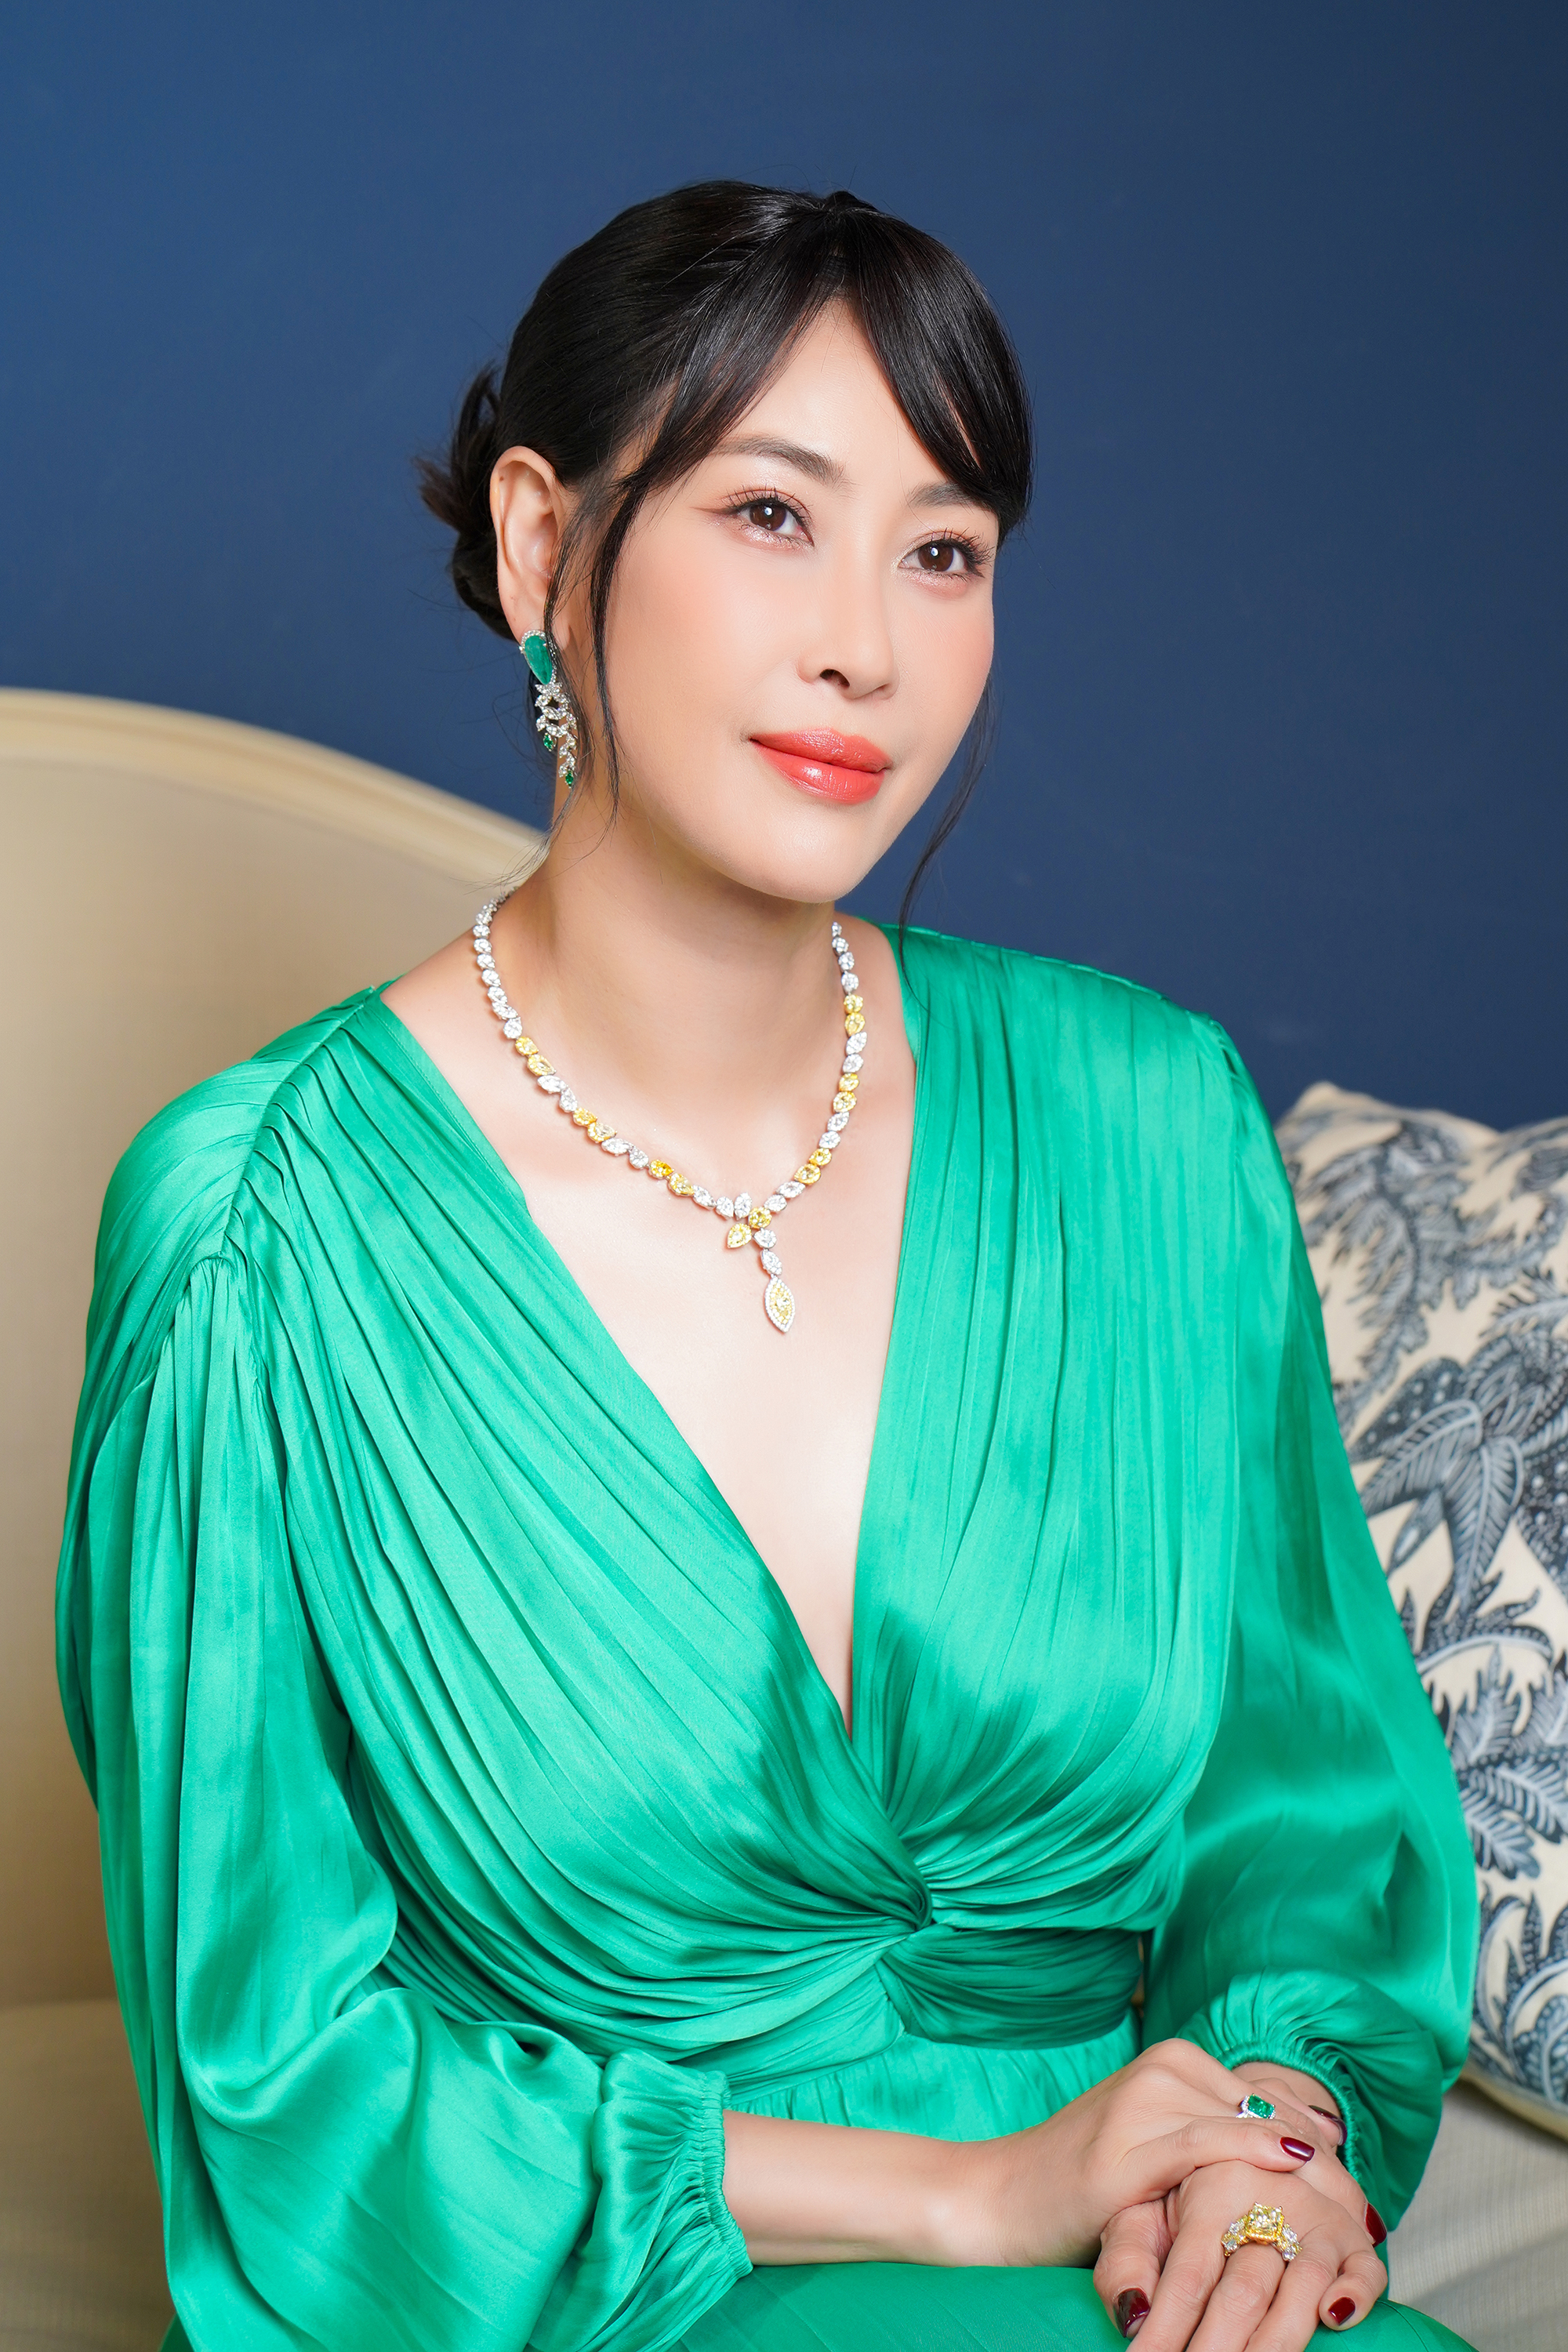 Hoa hậu Hà Kiều Anh sang trọng trong bộ trang sức kim cương - Ảnh 3.